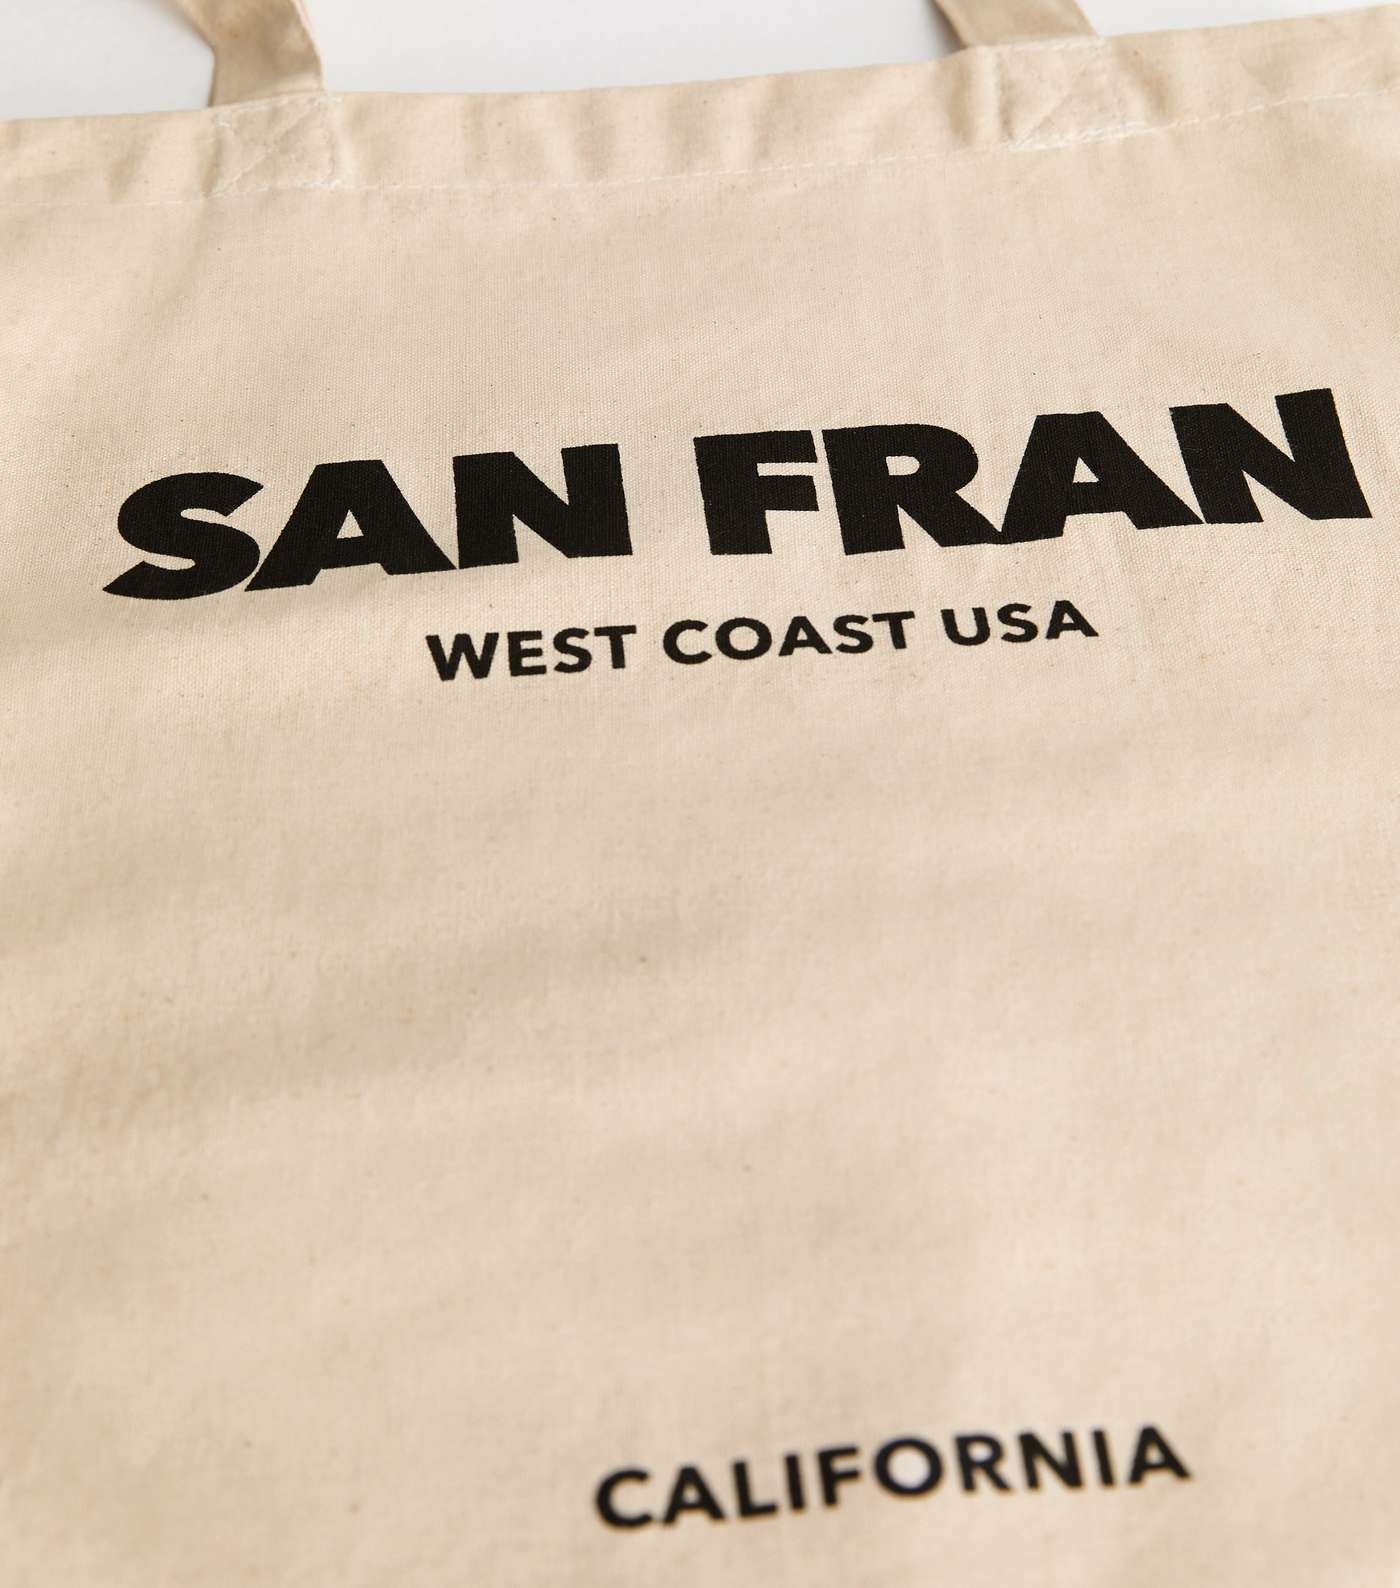 Stone San Fran Shopper Cotton Tote Bag Image 3